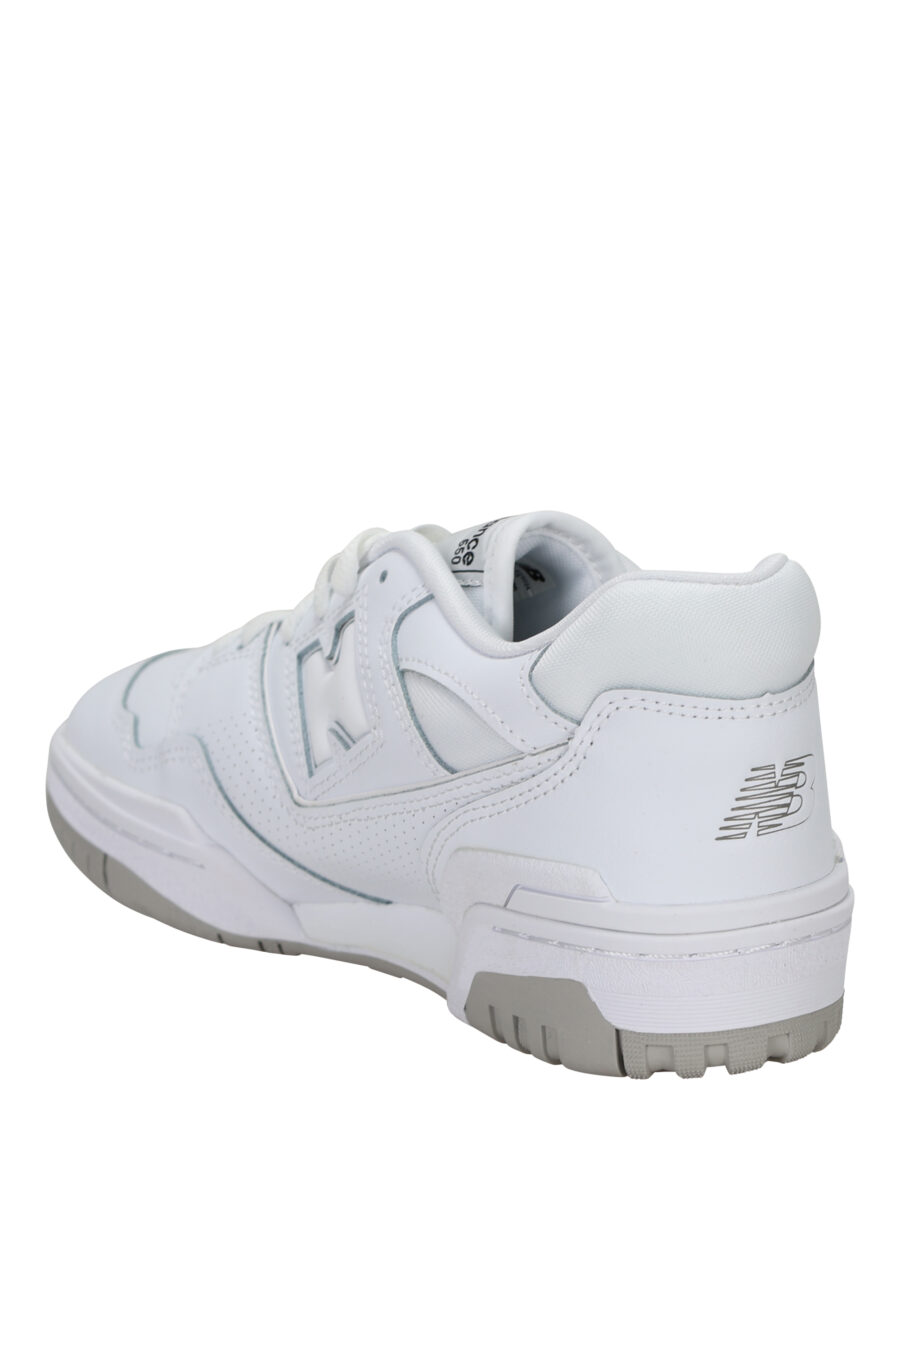 Zapatillas blancas mix con gris "550" y logo "N" blanco - 194768756931 3